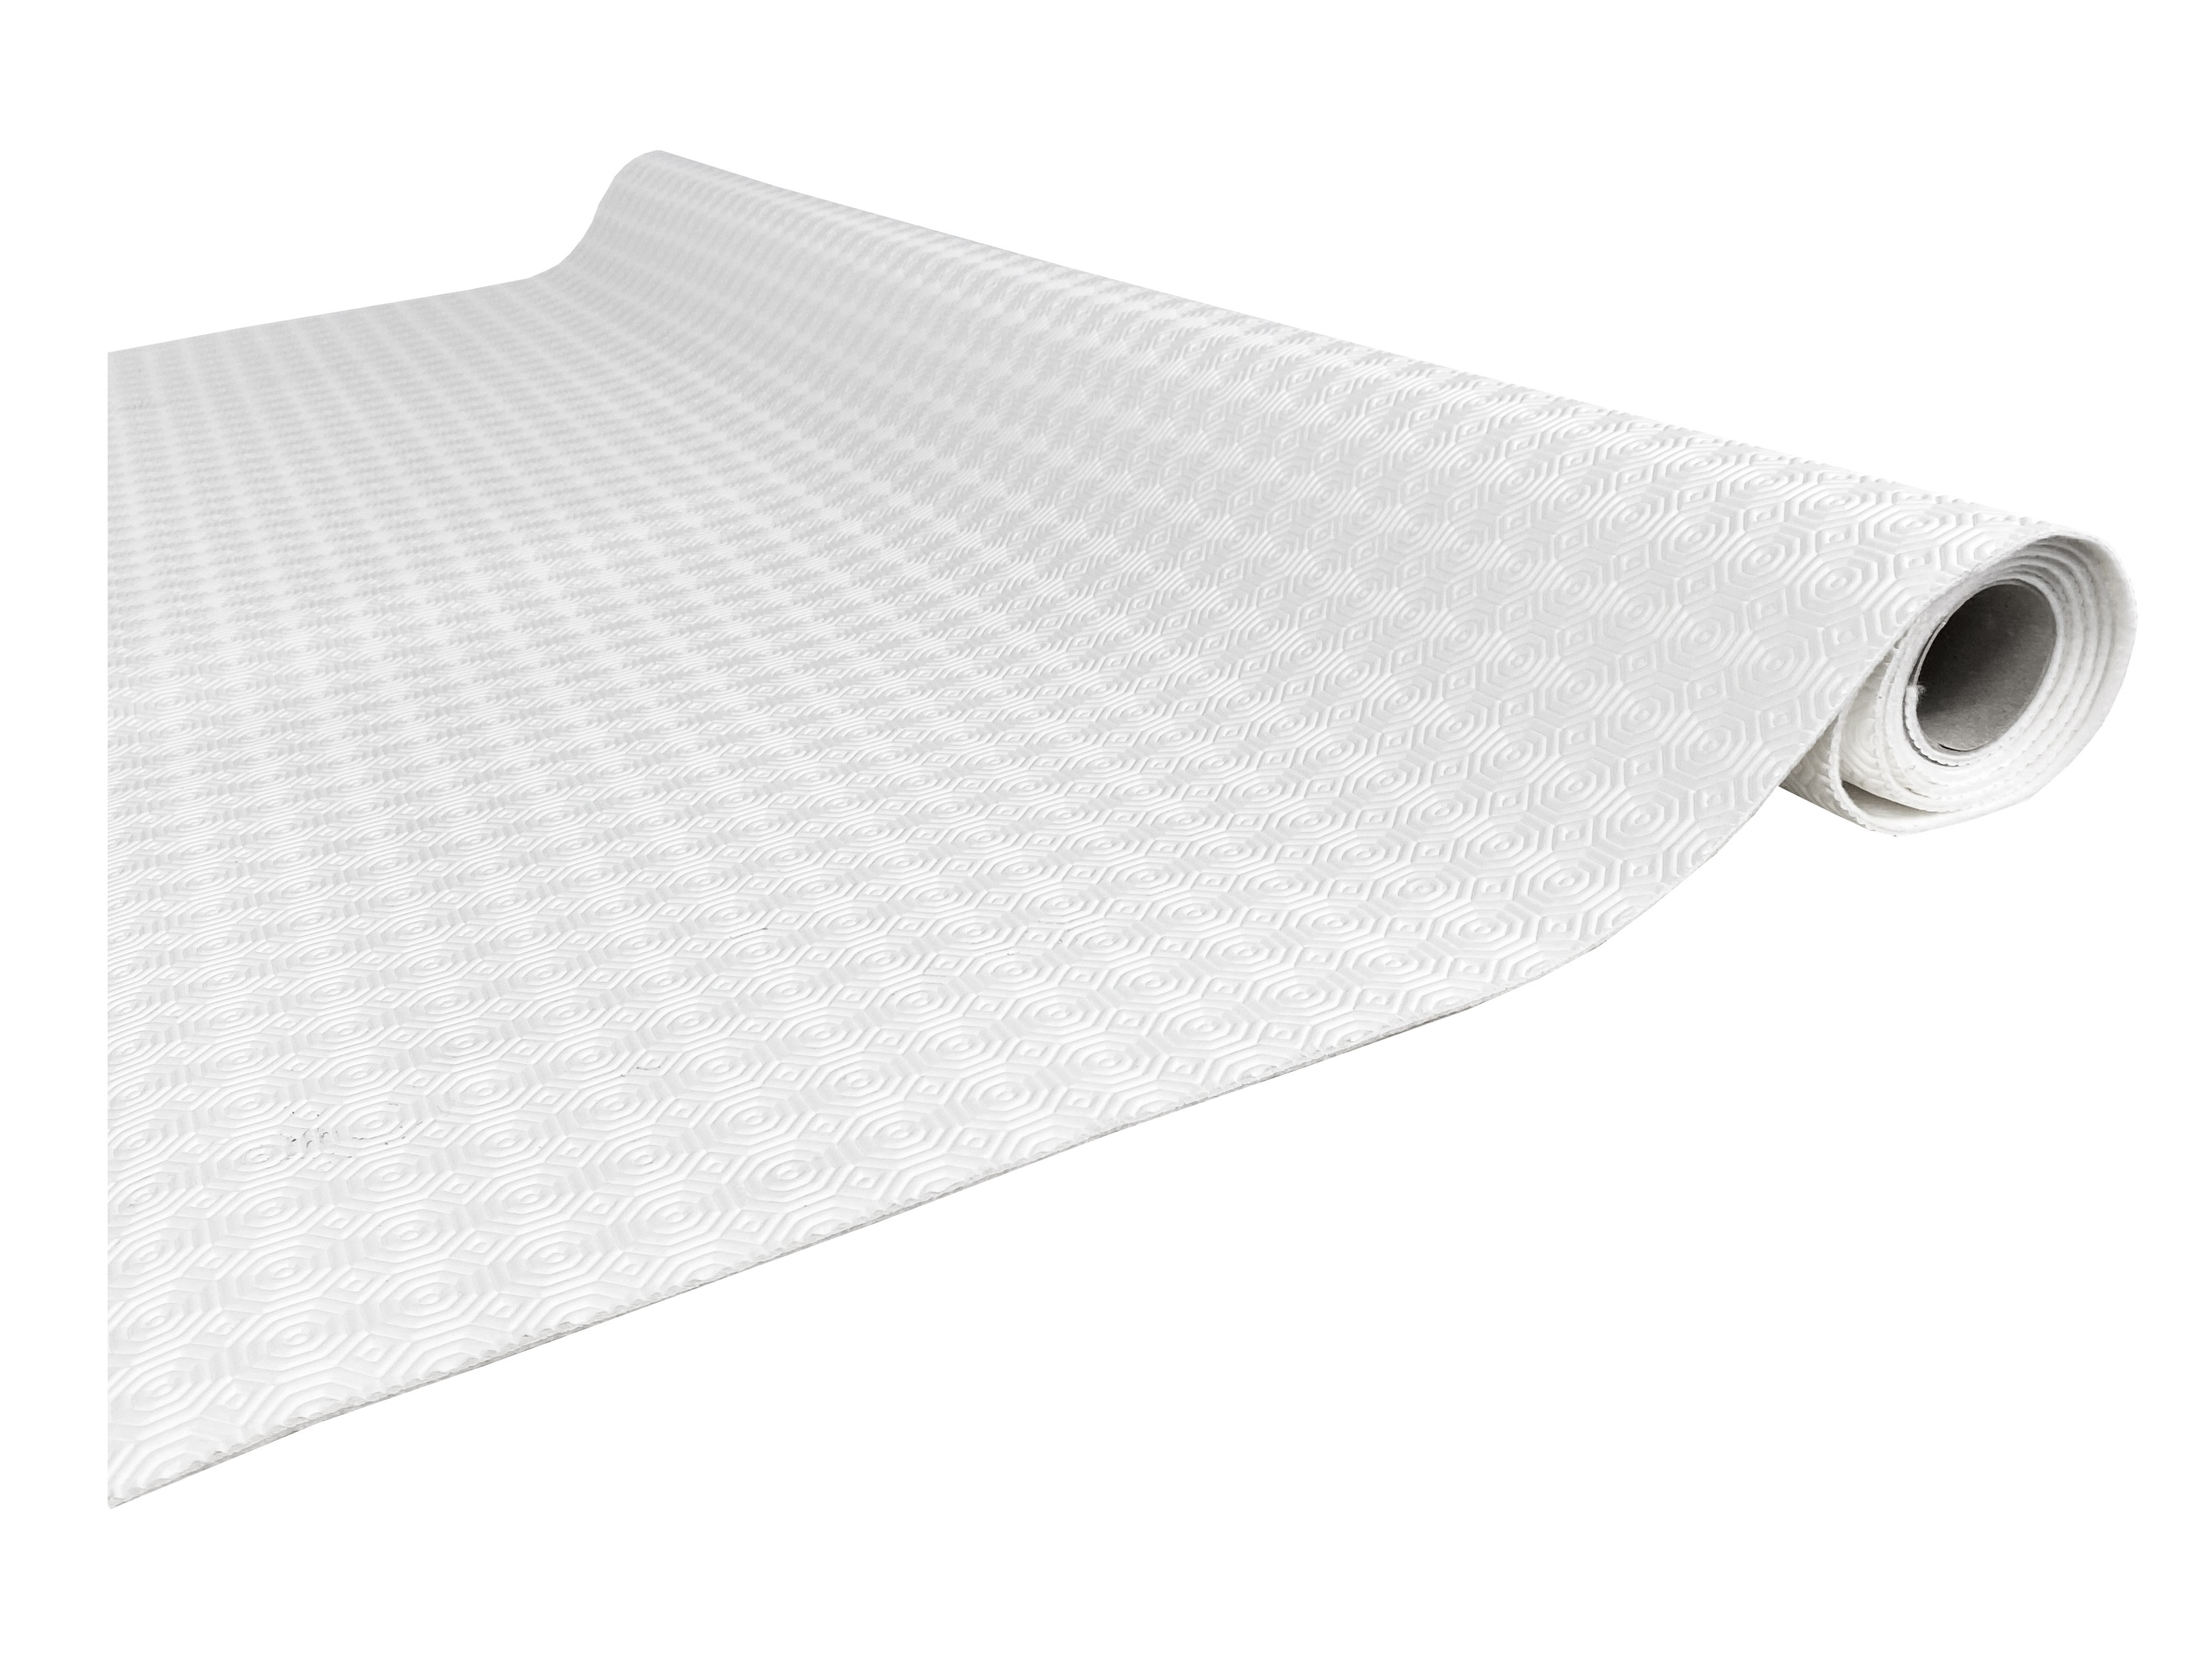 Mollettone proteggi tavolo Cristallo rettangolare 140X200 elastico cotone